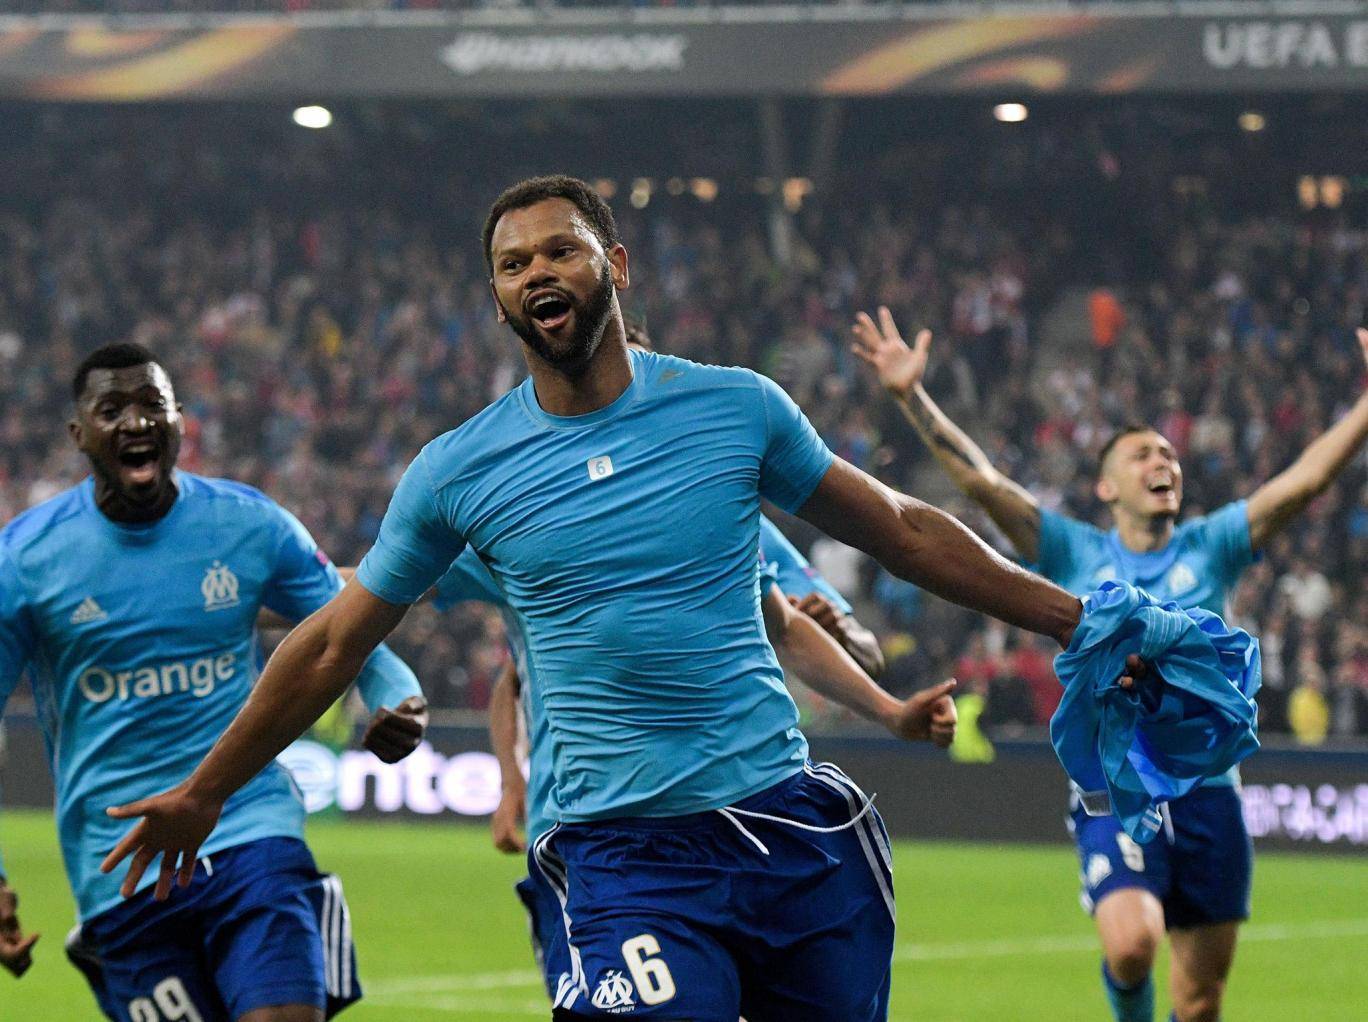 Marseille: Hành trình kỳ lạ đến chung kết Europa League - Bóng Đá